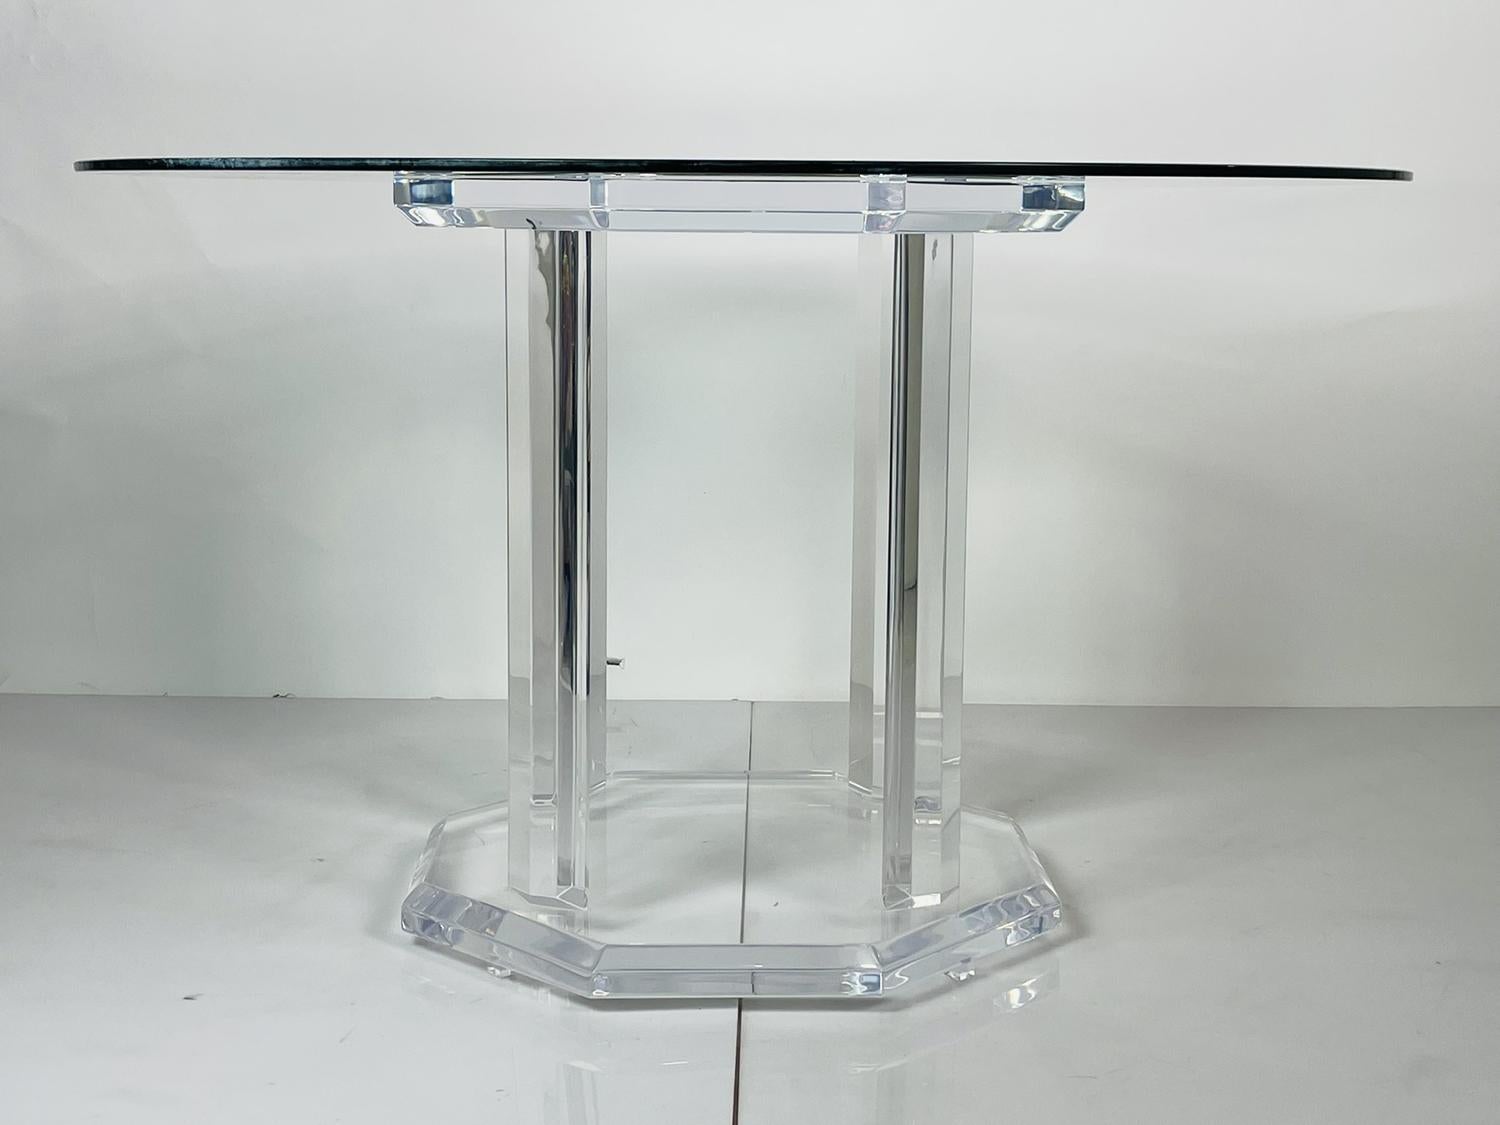 Magnifique base de piédestal en Lucite pour une grande table à manger ayant une forme octogonale faite de Lucite biseauté de 1.75 pouces.

Mesures :
24.50 pouces de largeur x 24.50 pouces de profondeur x 28.50 de hauteur, le verre montré est de 48